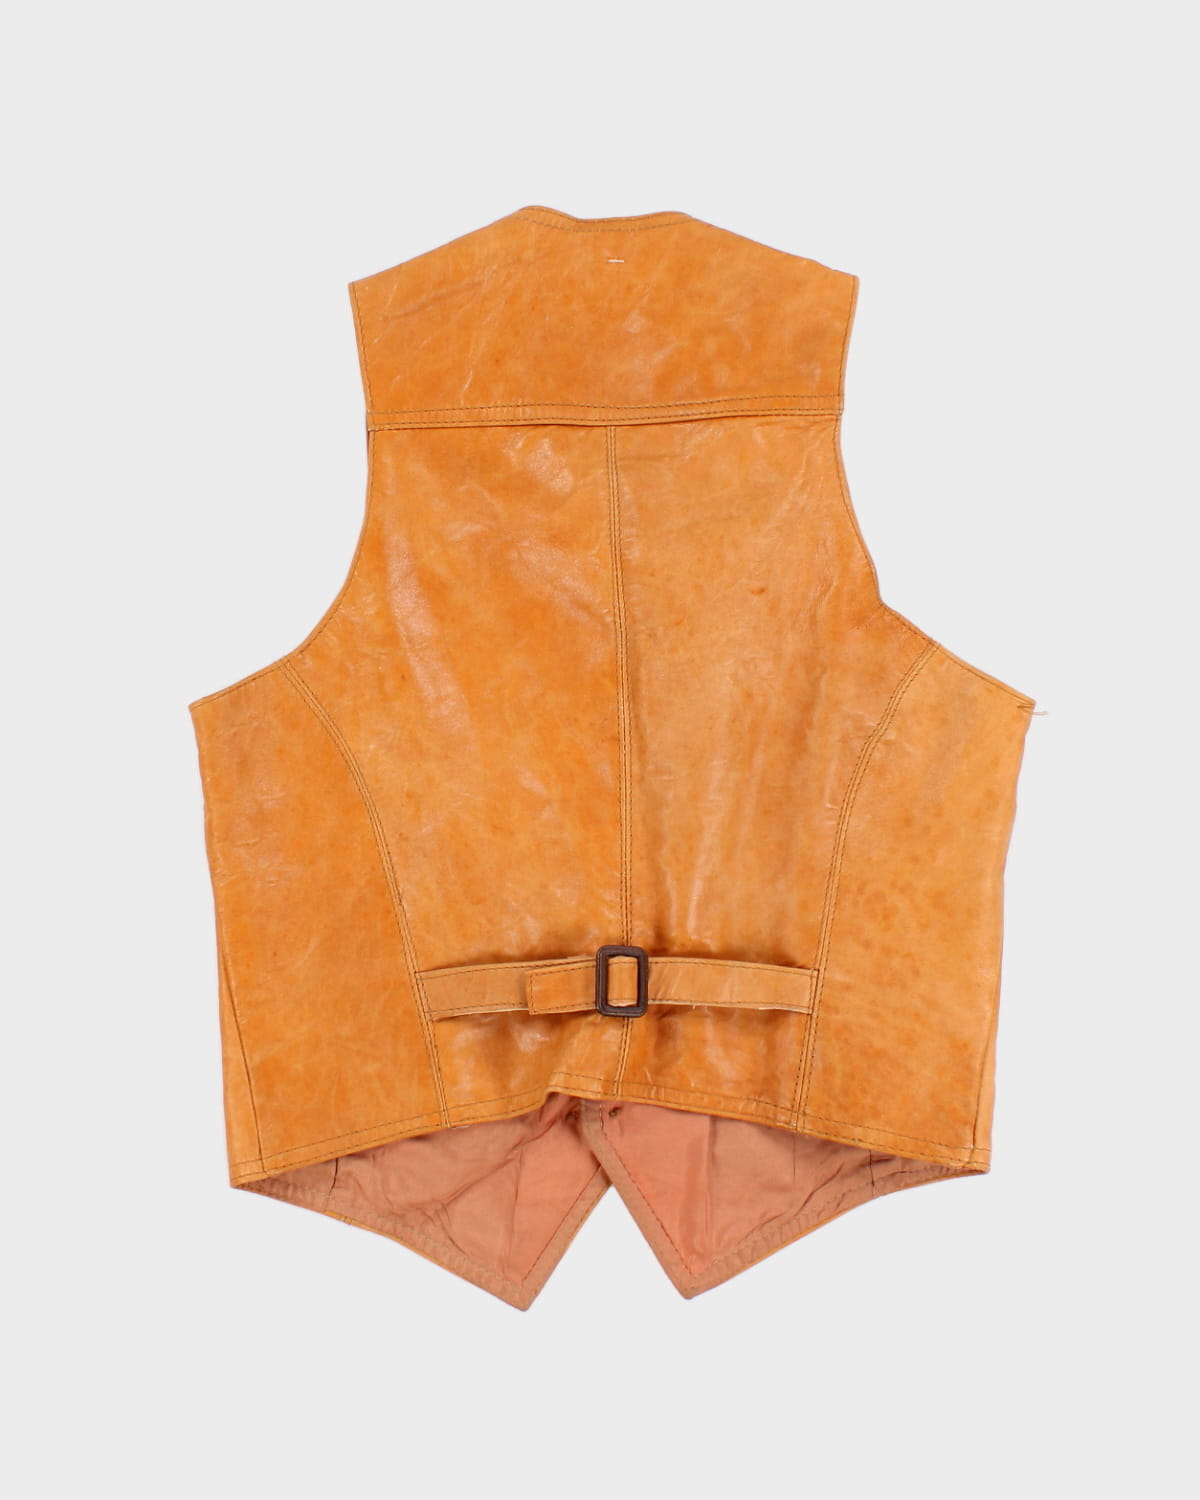 Vintage Camel Leather Vest - M - S